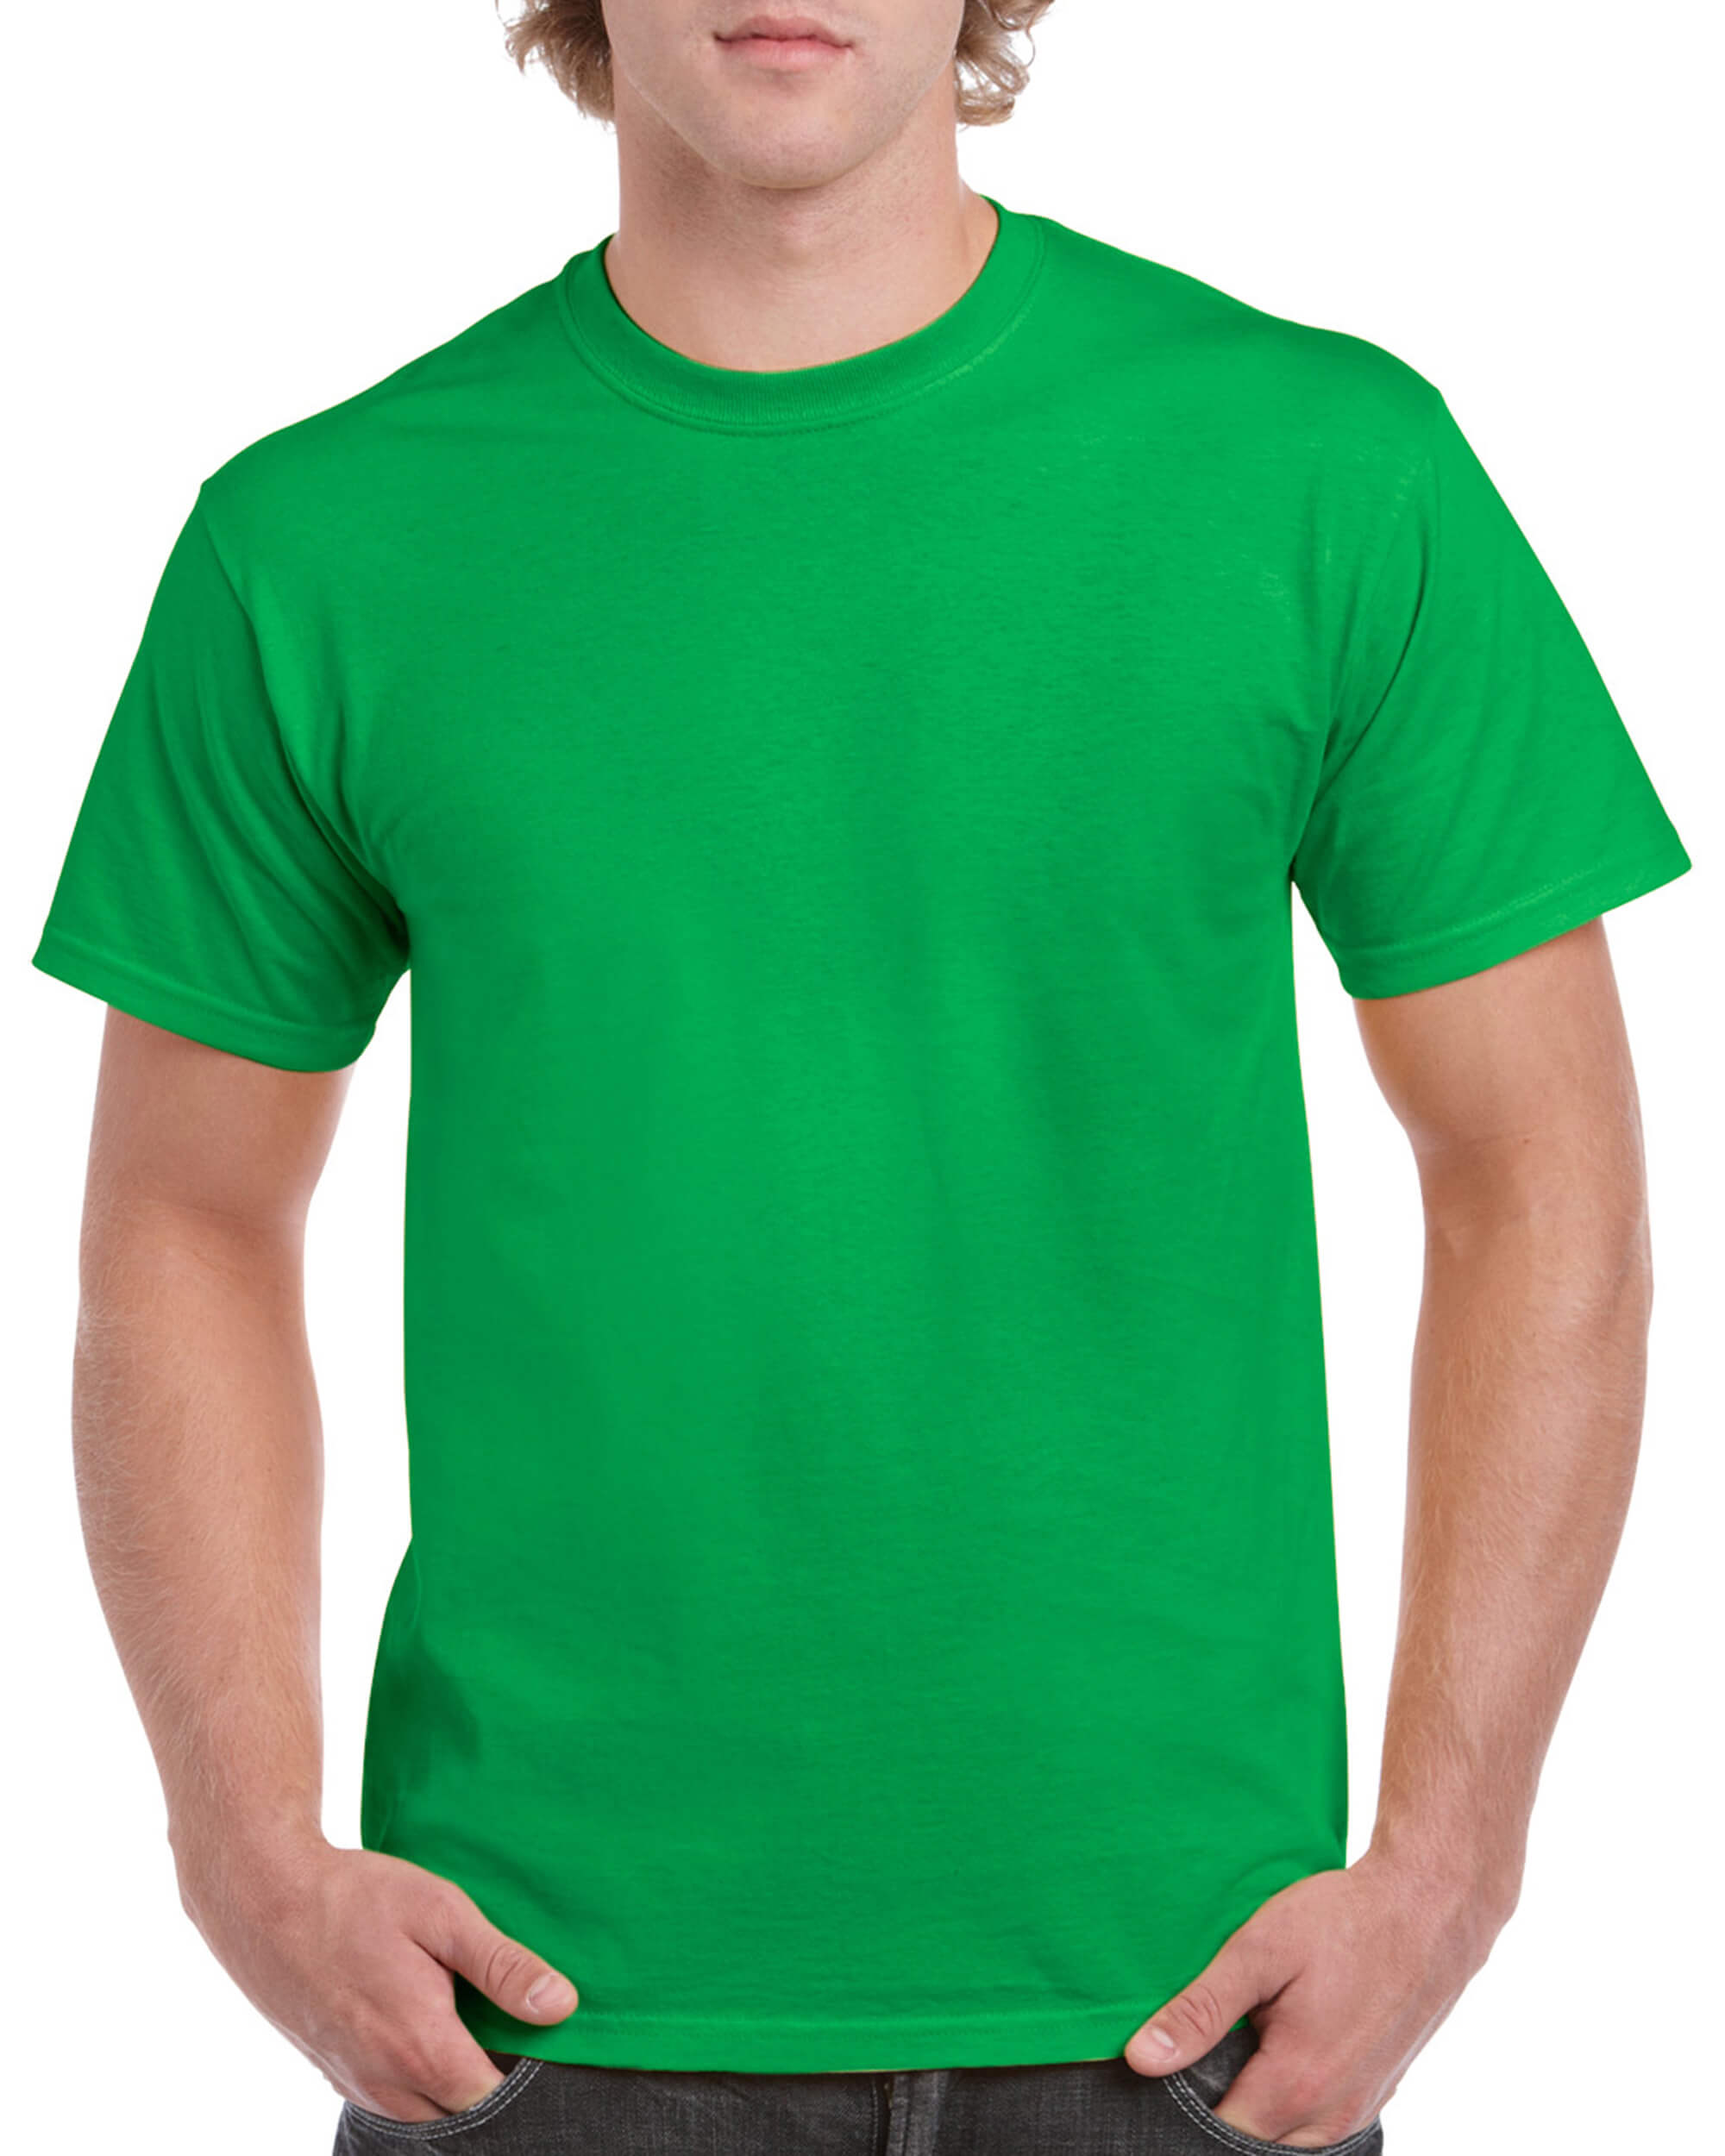 T-Shirt - Irish Green